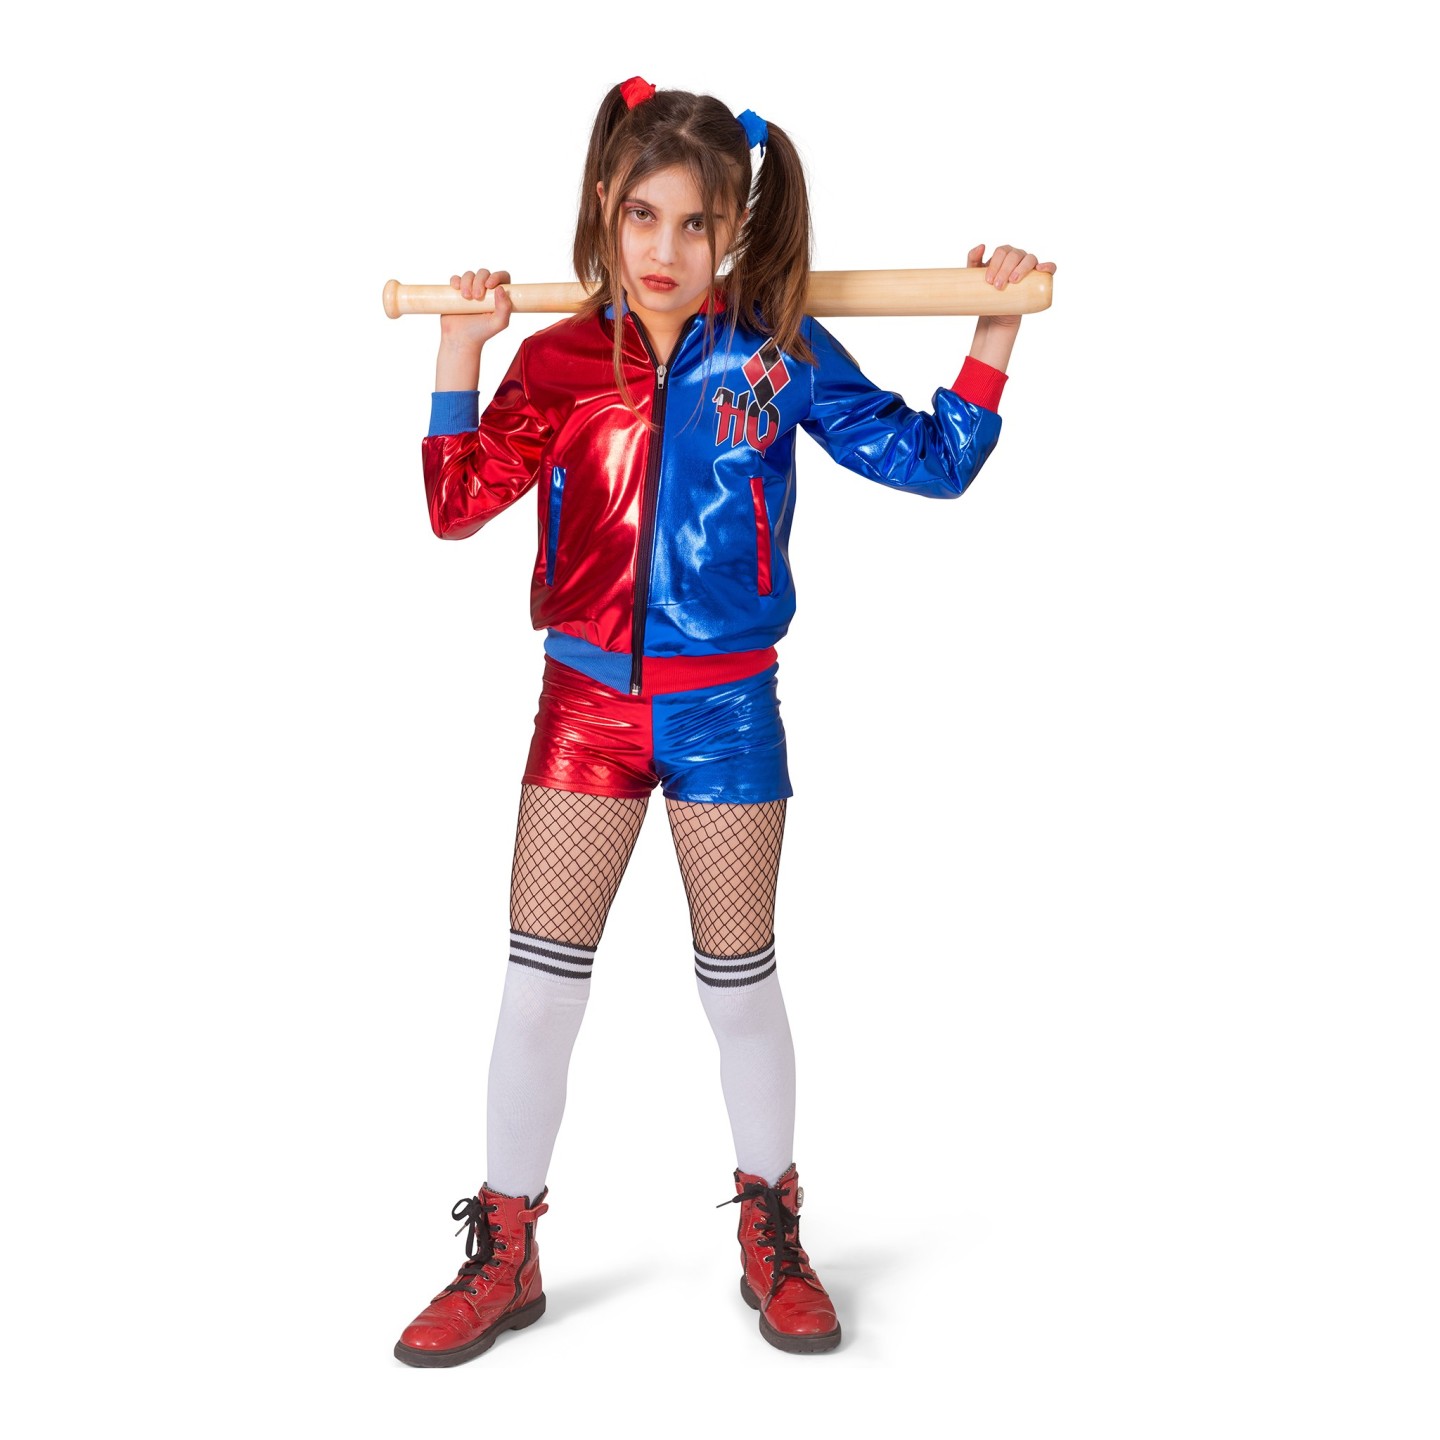 Vergemakkelijken perzik Inschrijven Harley Quinn kostuum kind | Jokershop.be - Verkleedkleding